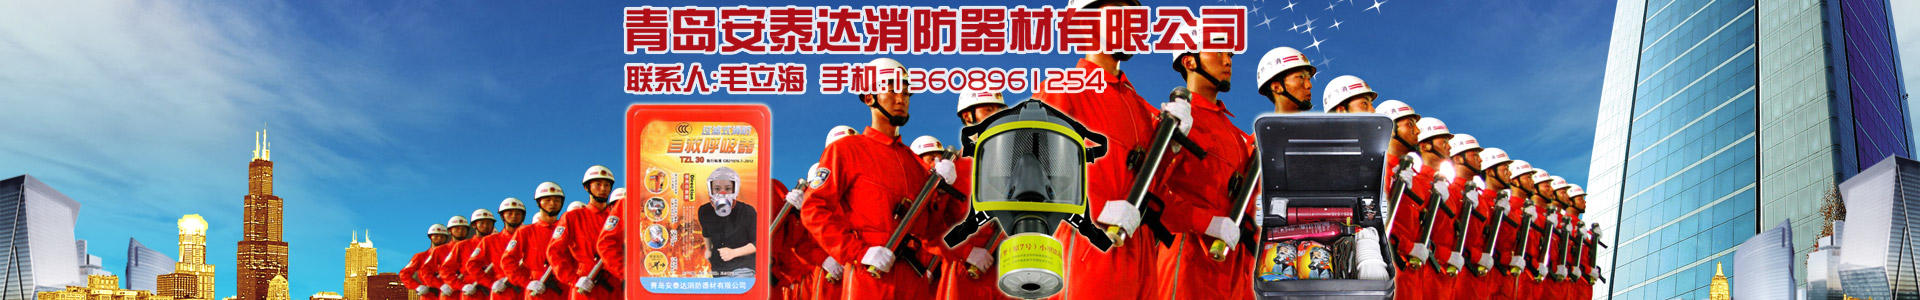 新闻动态-青岛安泰达消防器材有限公司-